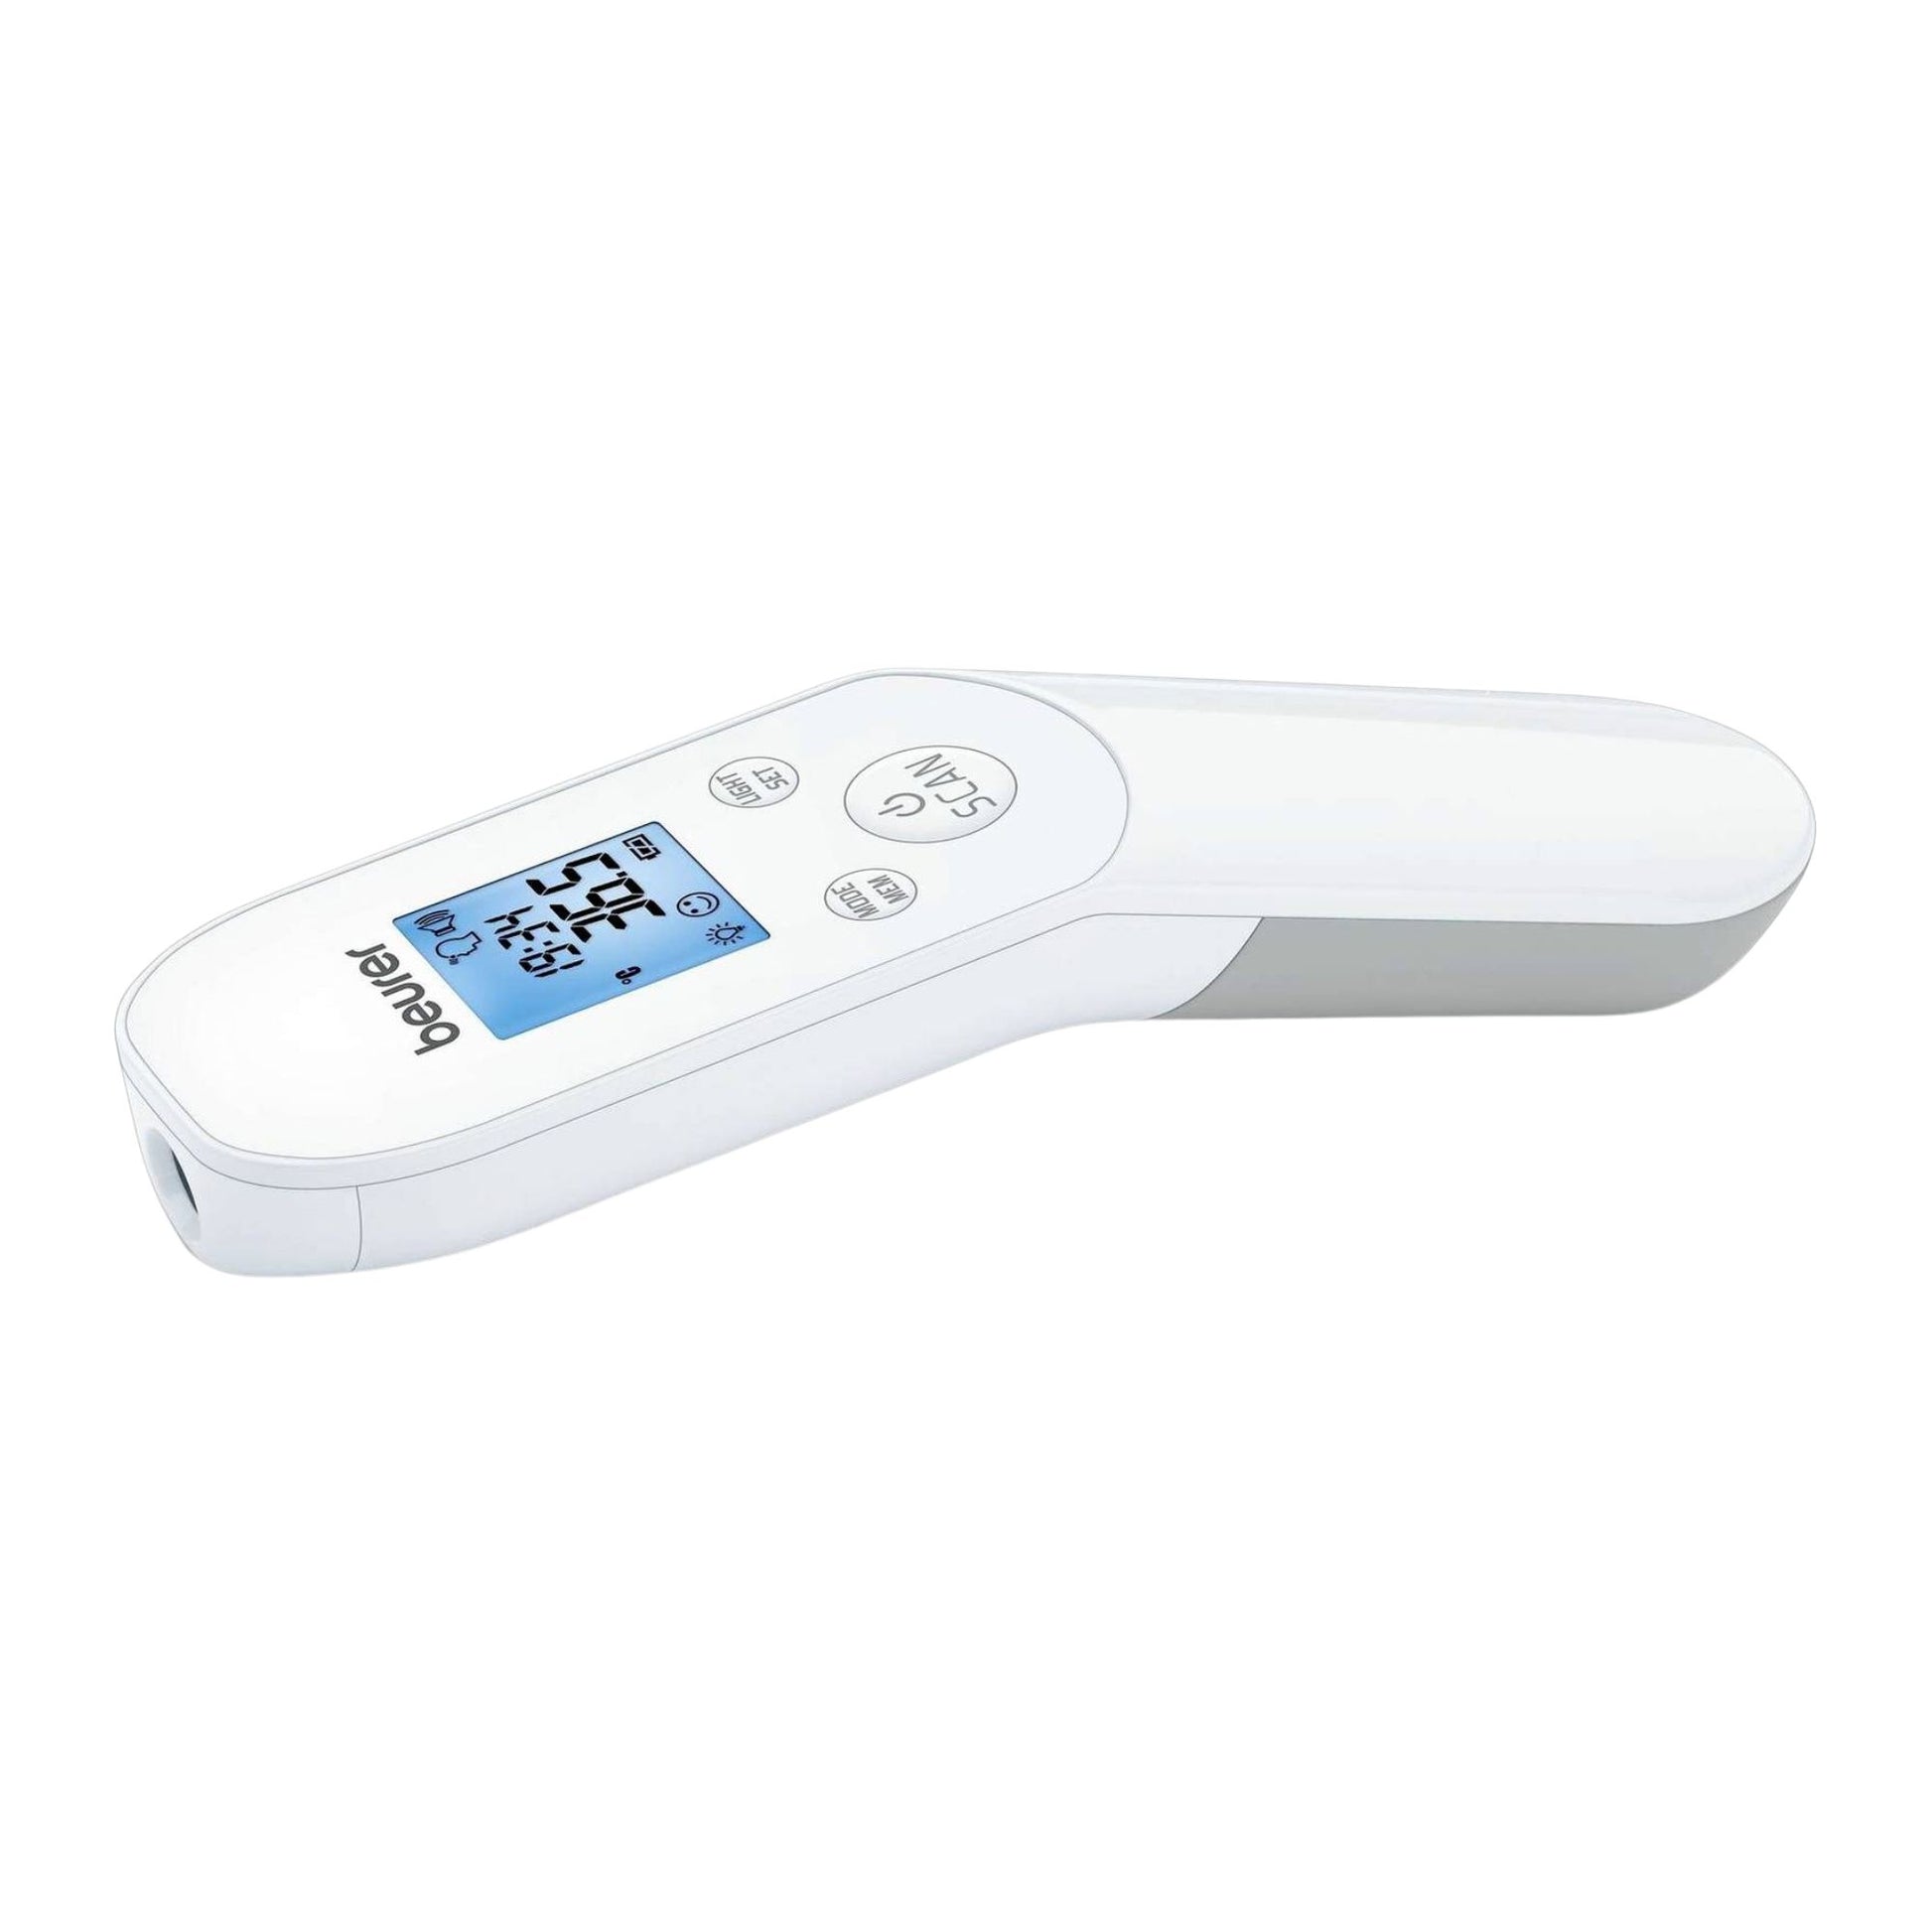 Satz mit Ersatz: Das kontaktlose Fieberthermometer FT 85 von Beurer zeigt auf seinem Bildschirm eine Temperatur von 36,5 Grad Celsius an, isoliert auf einem weißen Hintergrund.